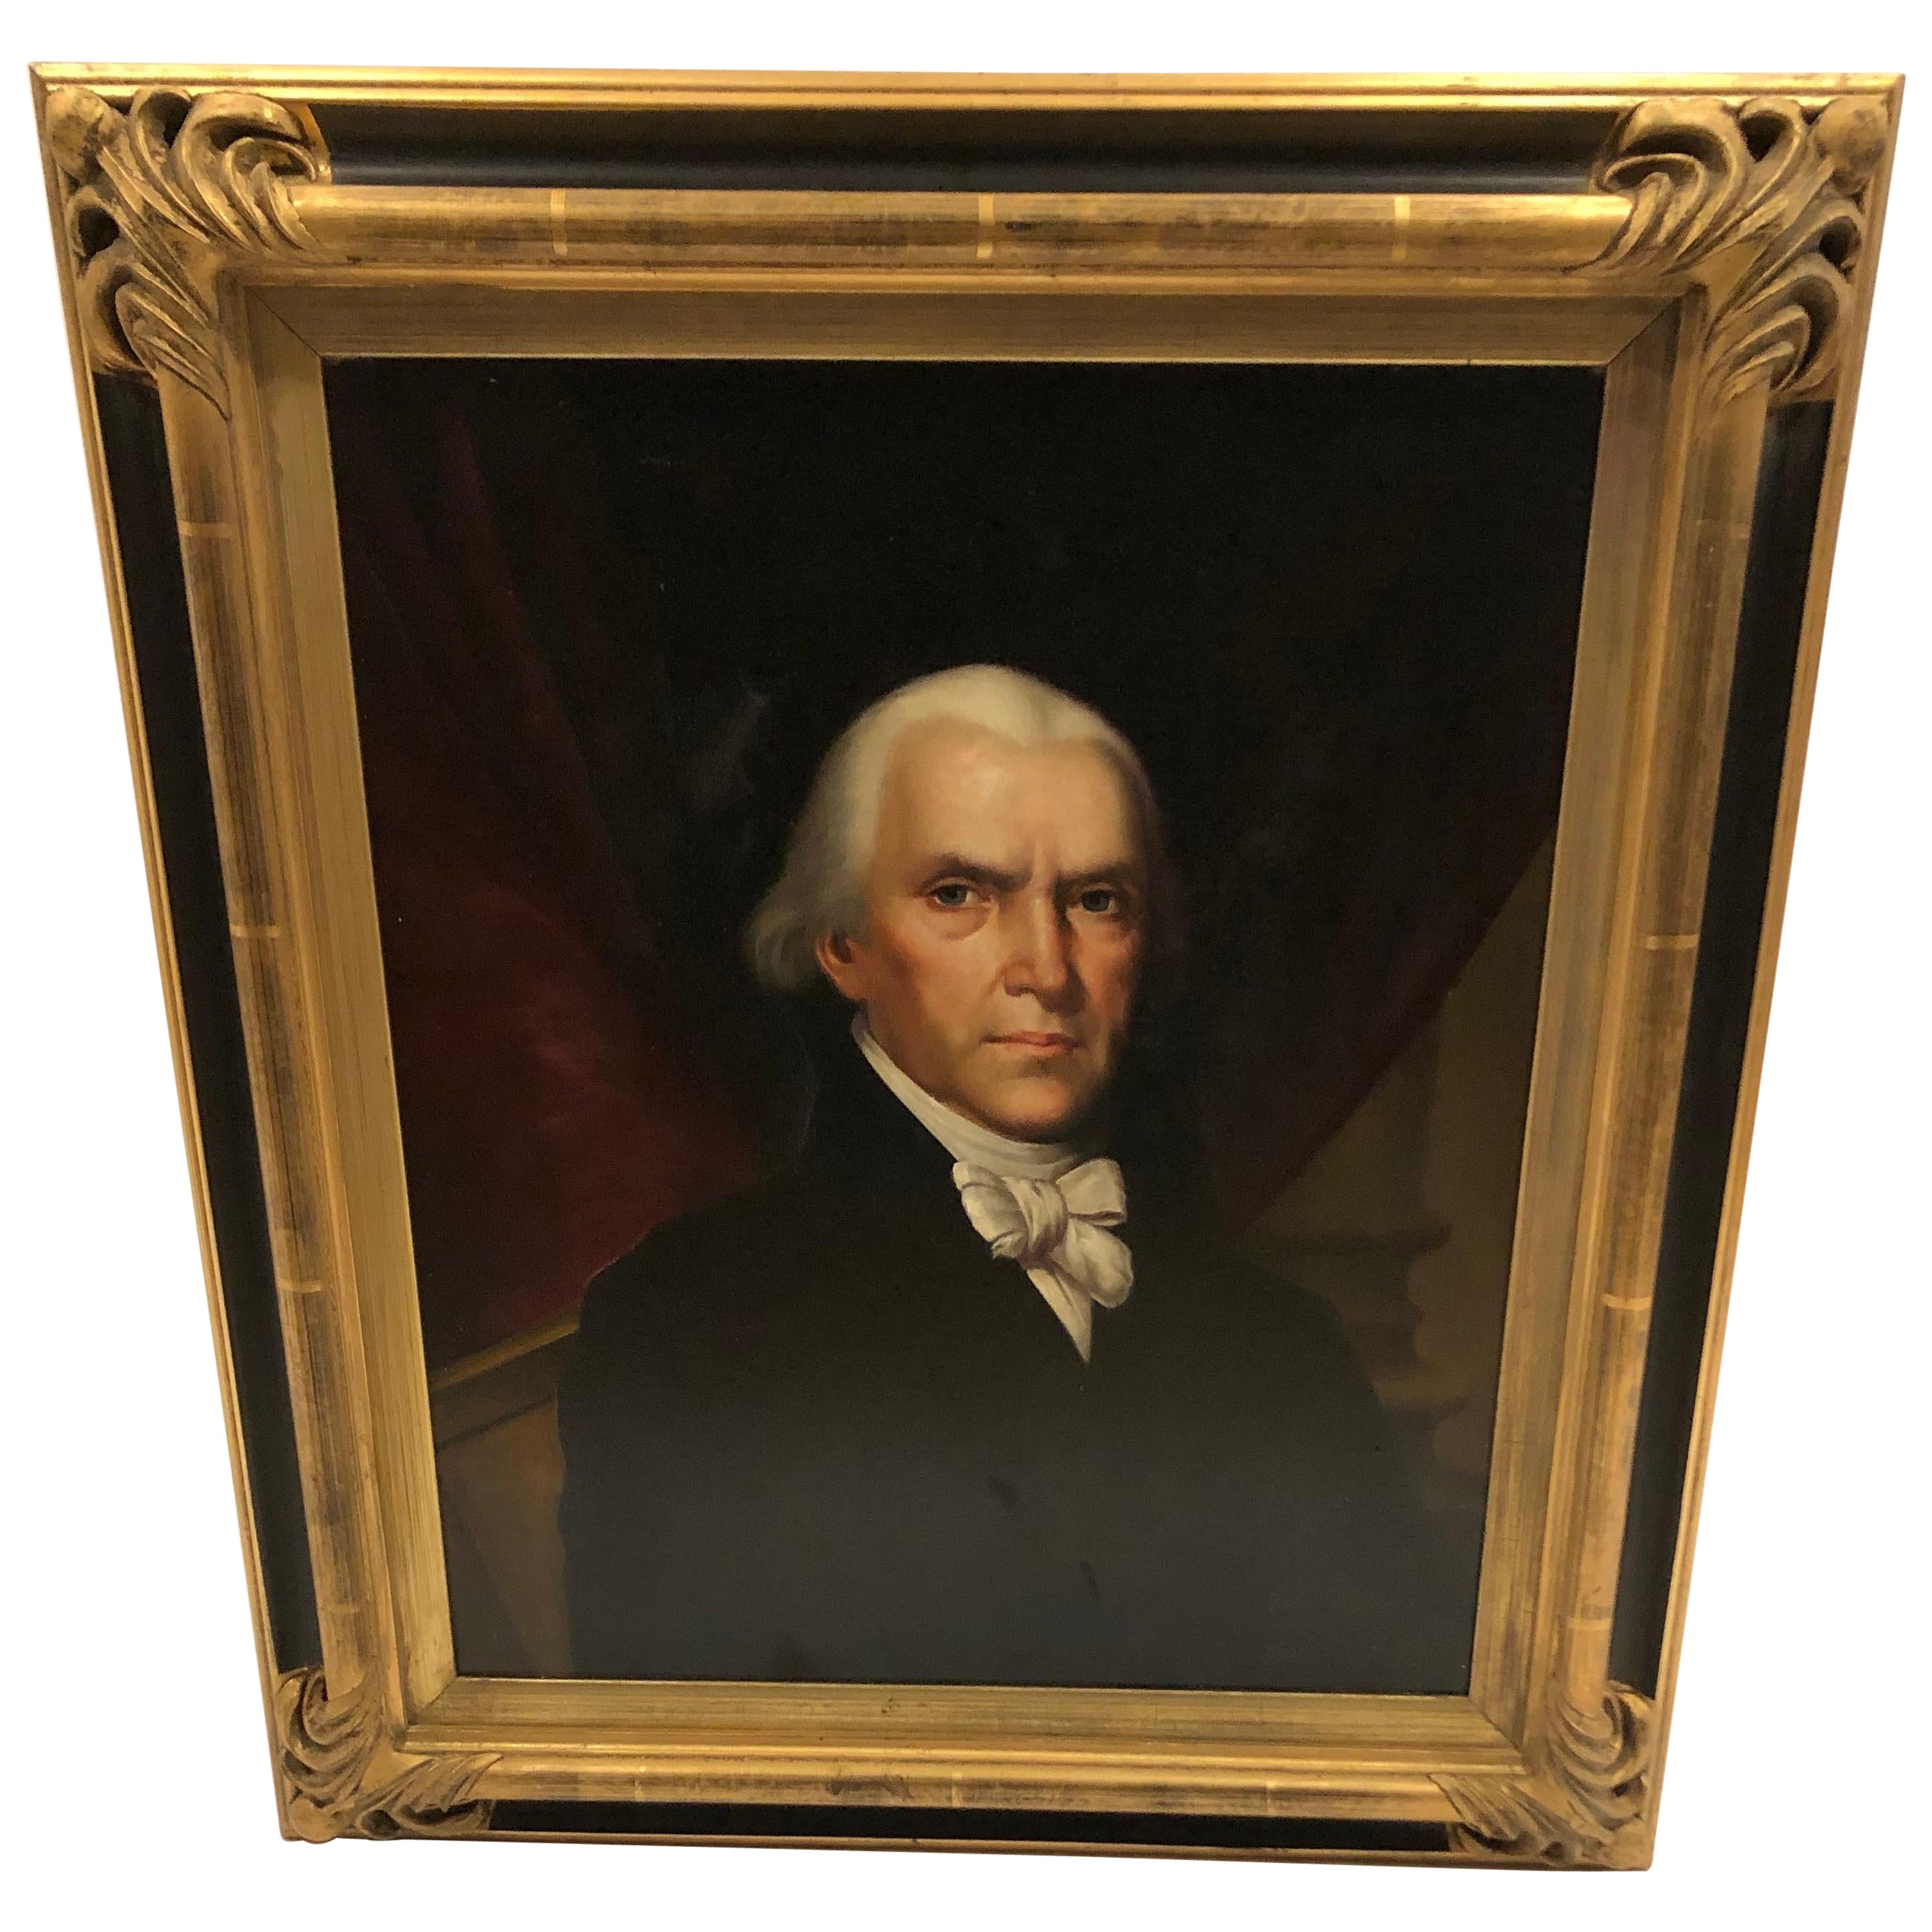 Porträt des Präsidenten James Madison aus der Alten Welt von Henry Callan